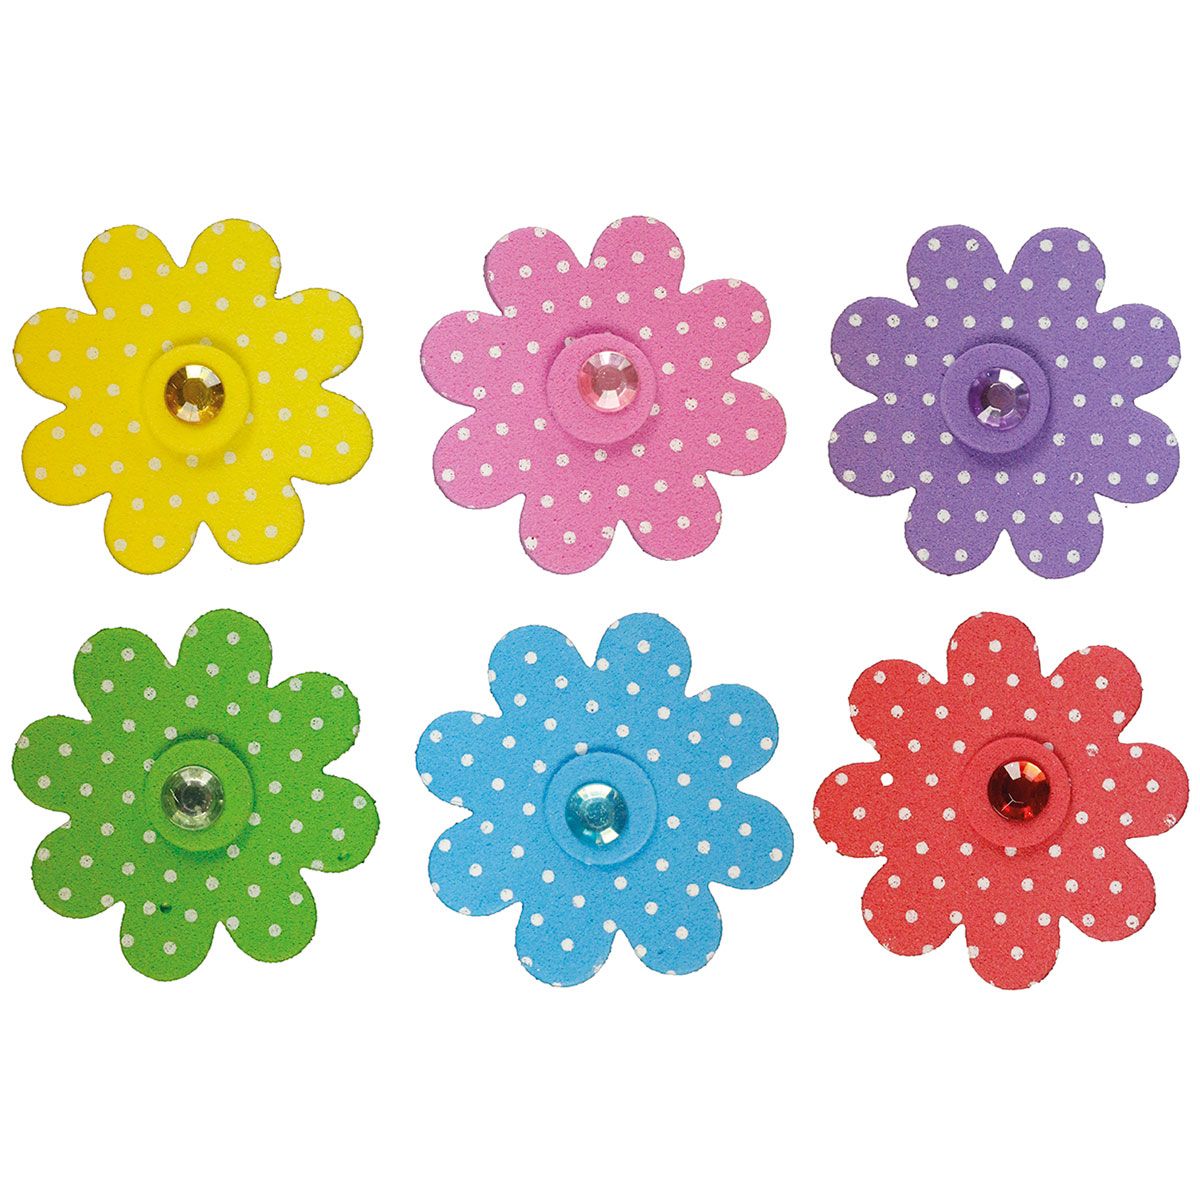 Naklejka (nalepka) Craft-Fun Series piankowe kwiaty z kryształkiem Titanum (5052B)